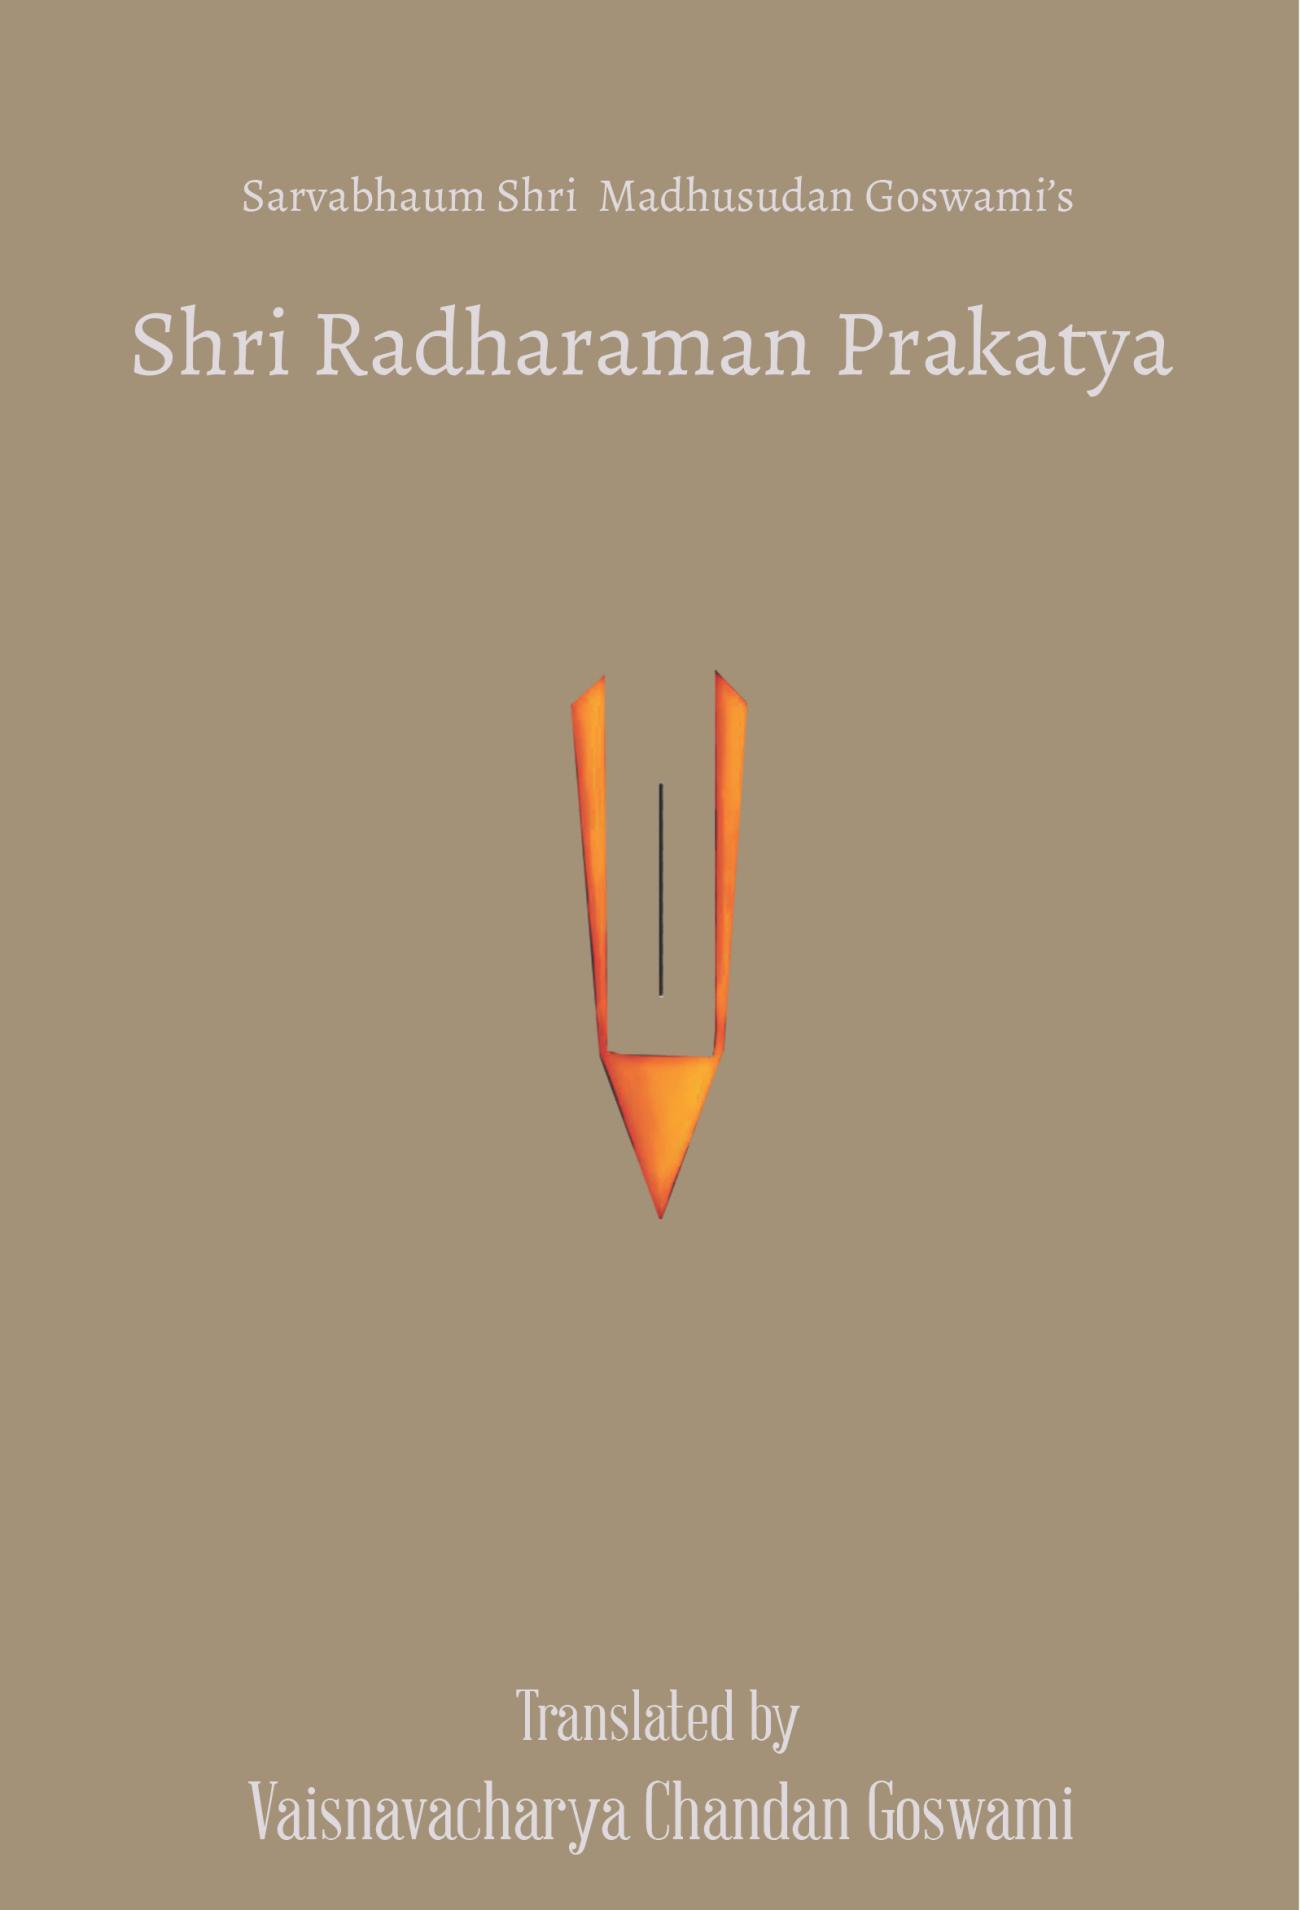 Shri Radharaman Prakatya